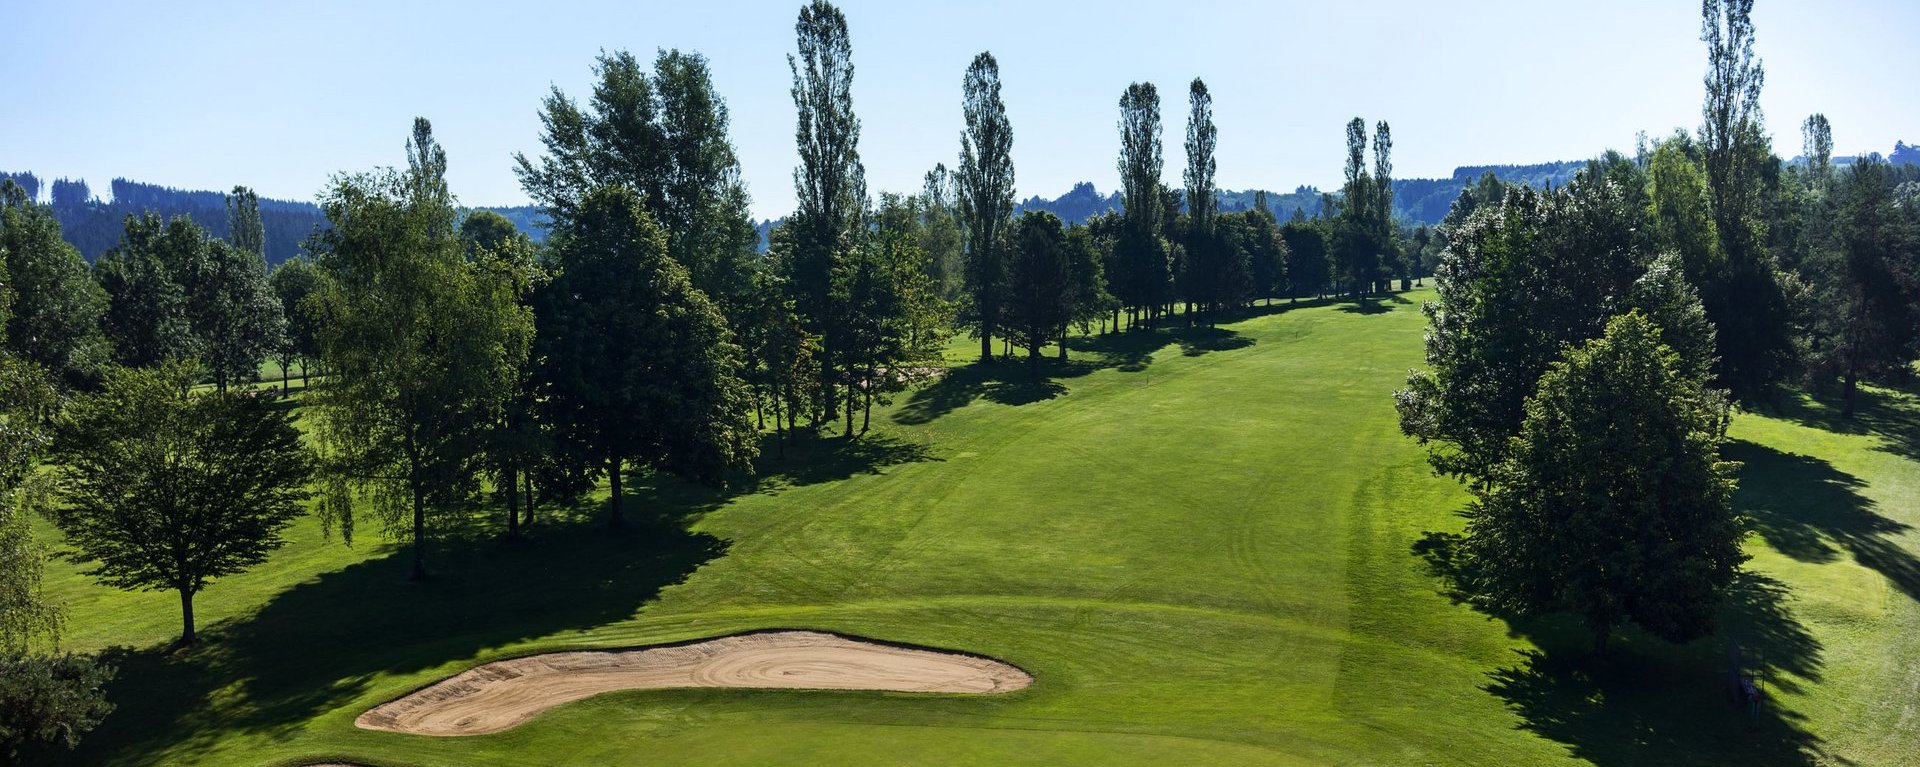 Das Grün mit Bunkern der Golfbahn 06 auf der Golfanlage Allgäuer Golf- und Landclub e.V. Ottobeuren